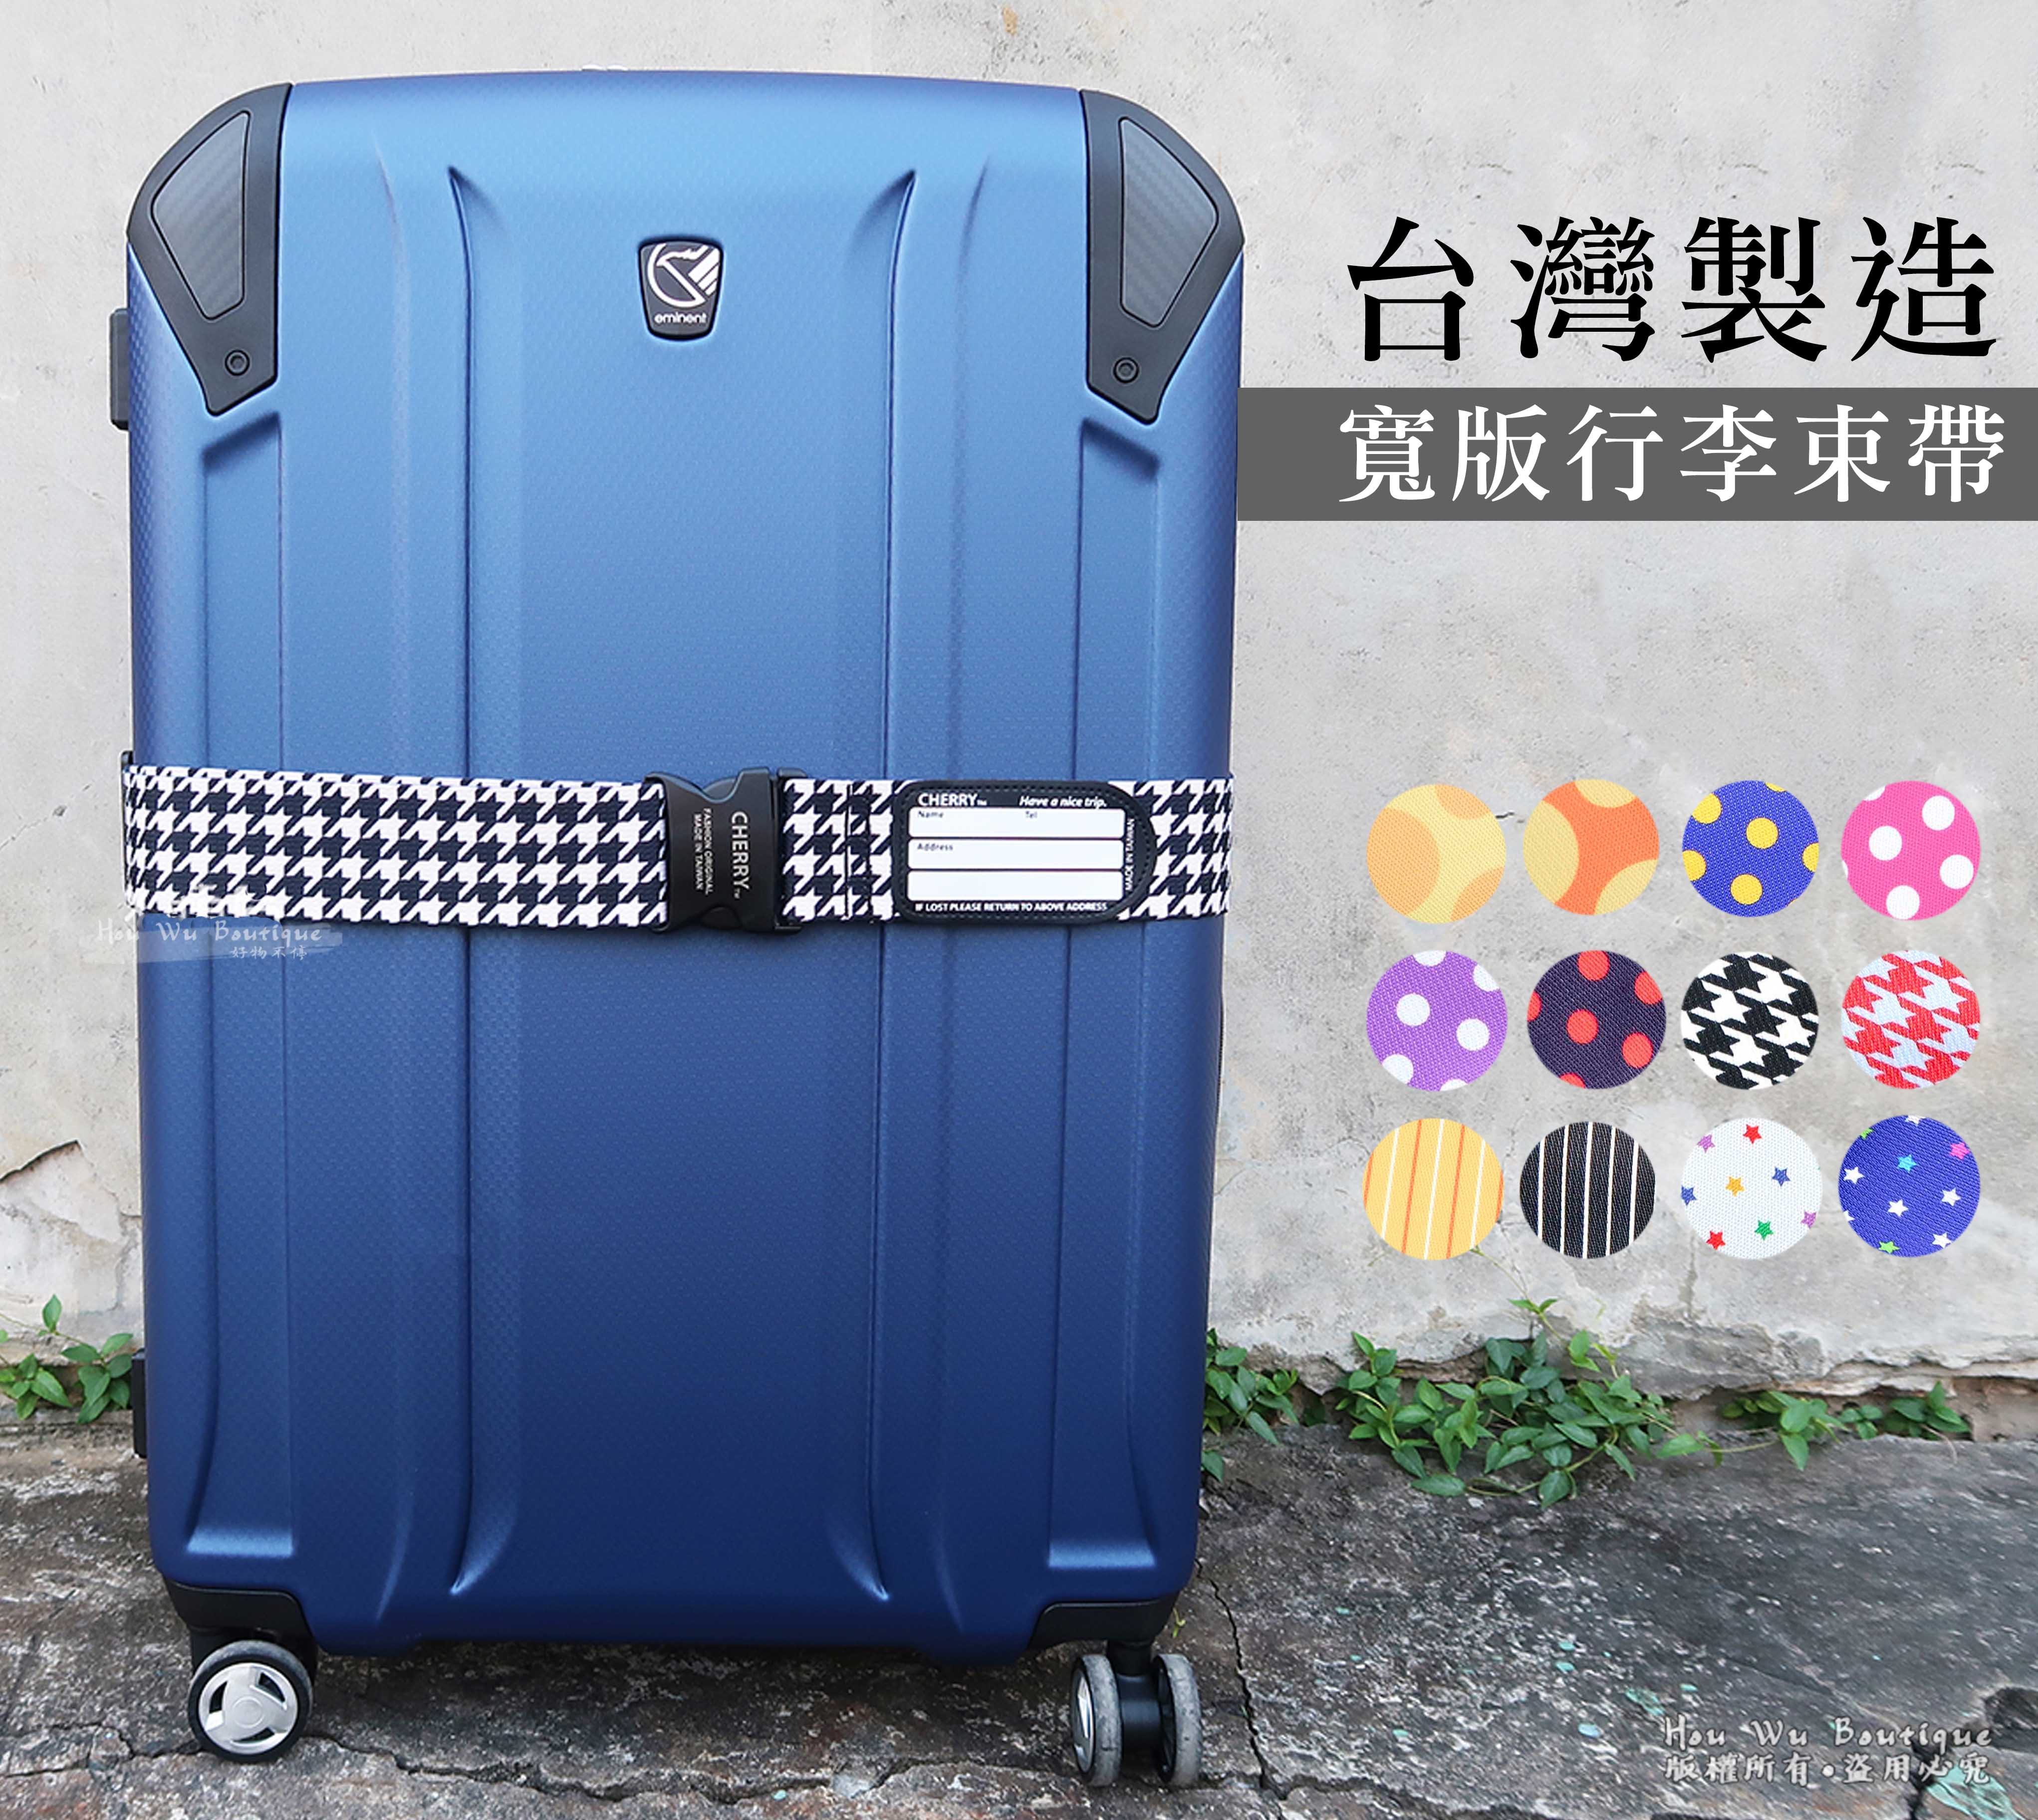 YESON 永生 台灣製造 寬版行李帶 行李綁帶 束帶 防爆開 寬版束帶 915 (多色)